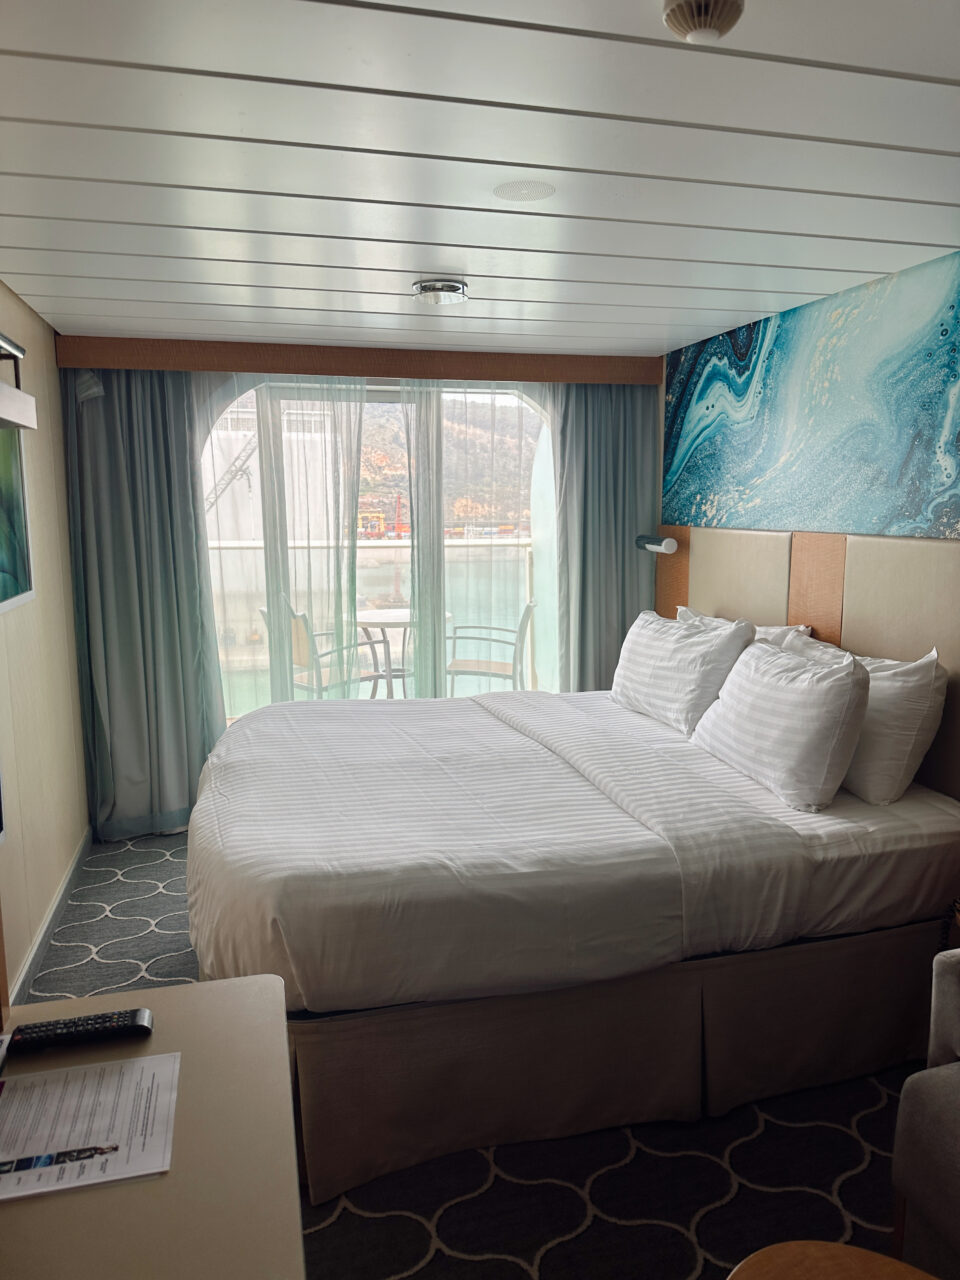 Lugar med dobbeltseng, balkong og havutsikt om bord Royal Caribbean Oasis Of The Seas. Foto